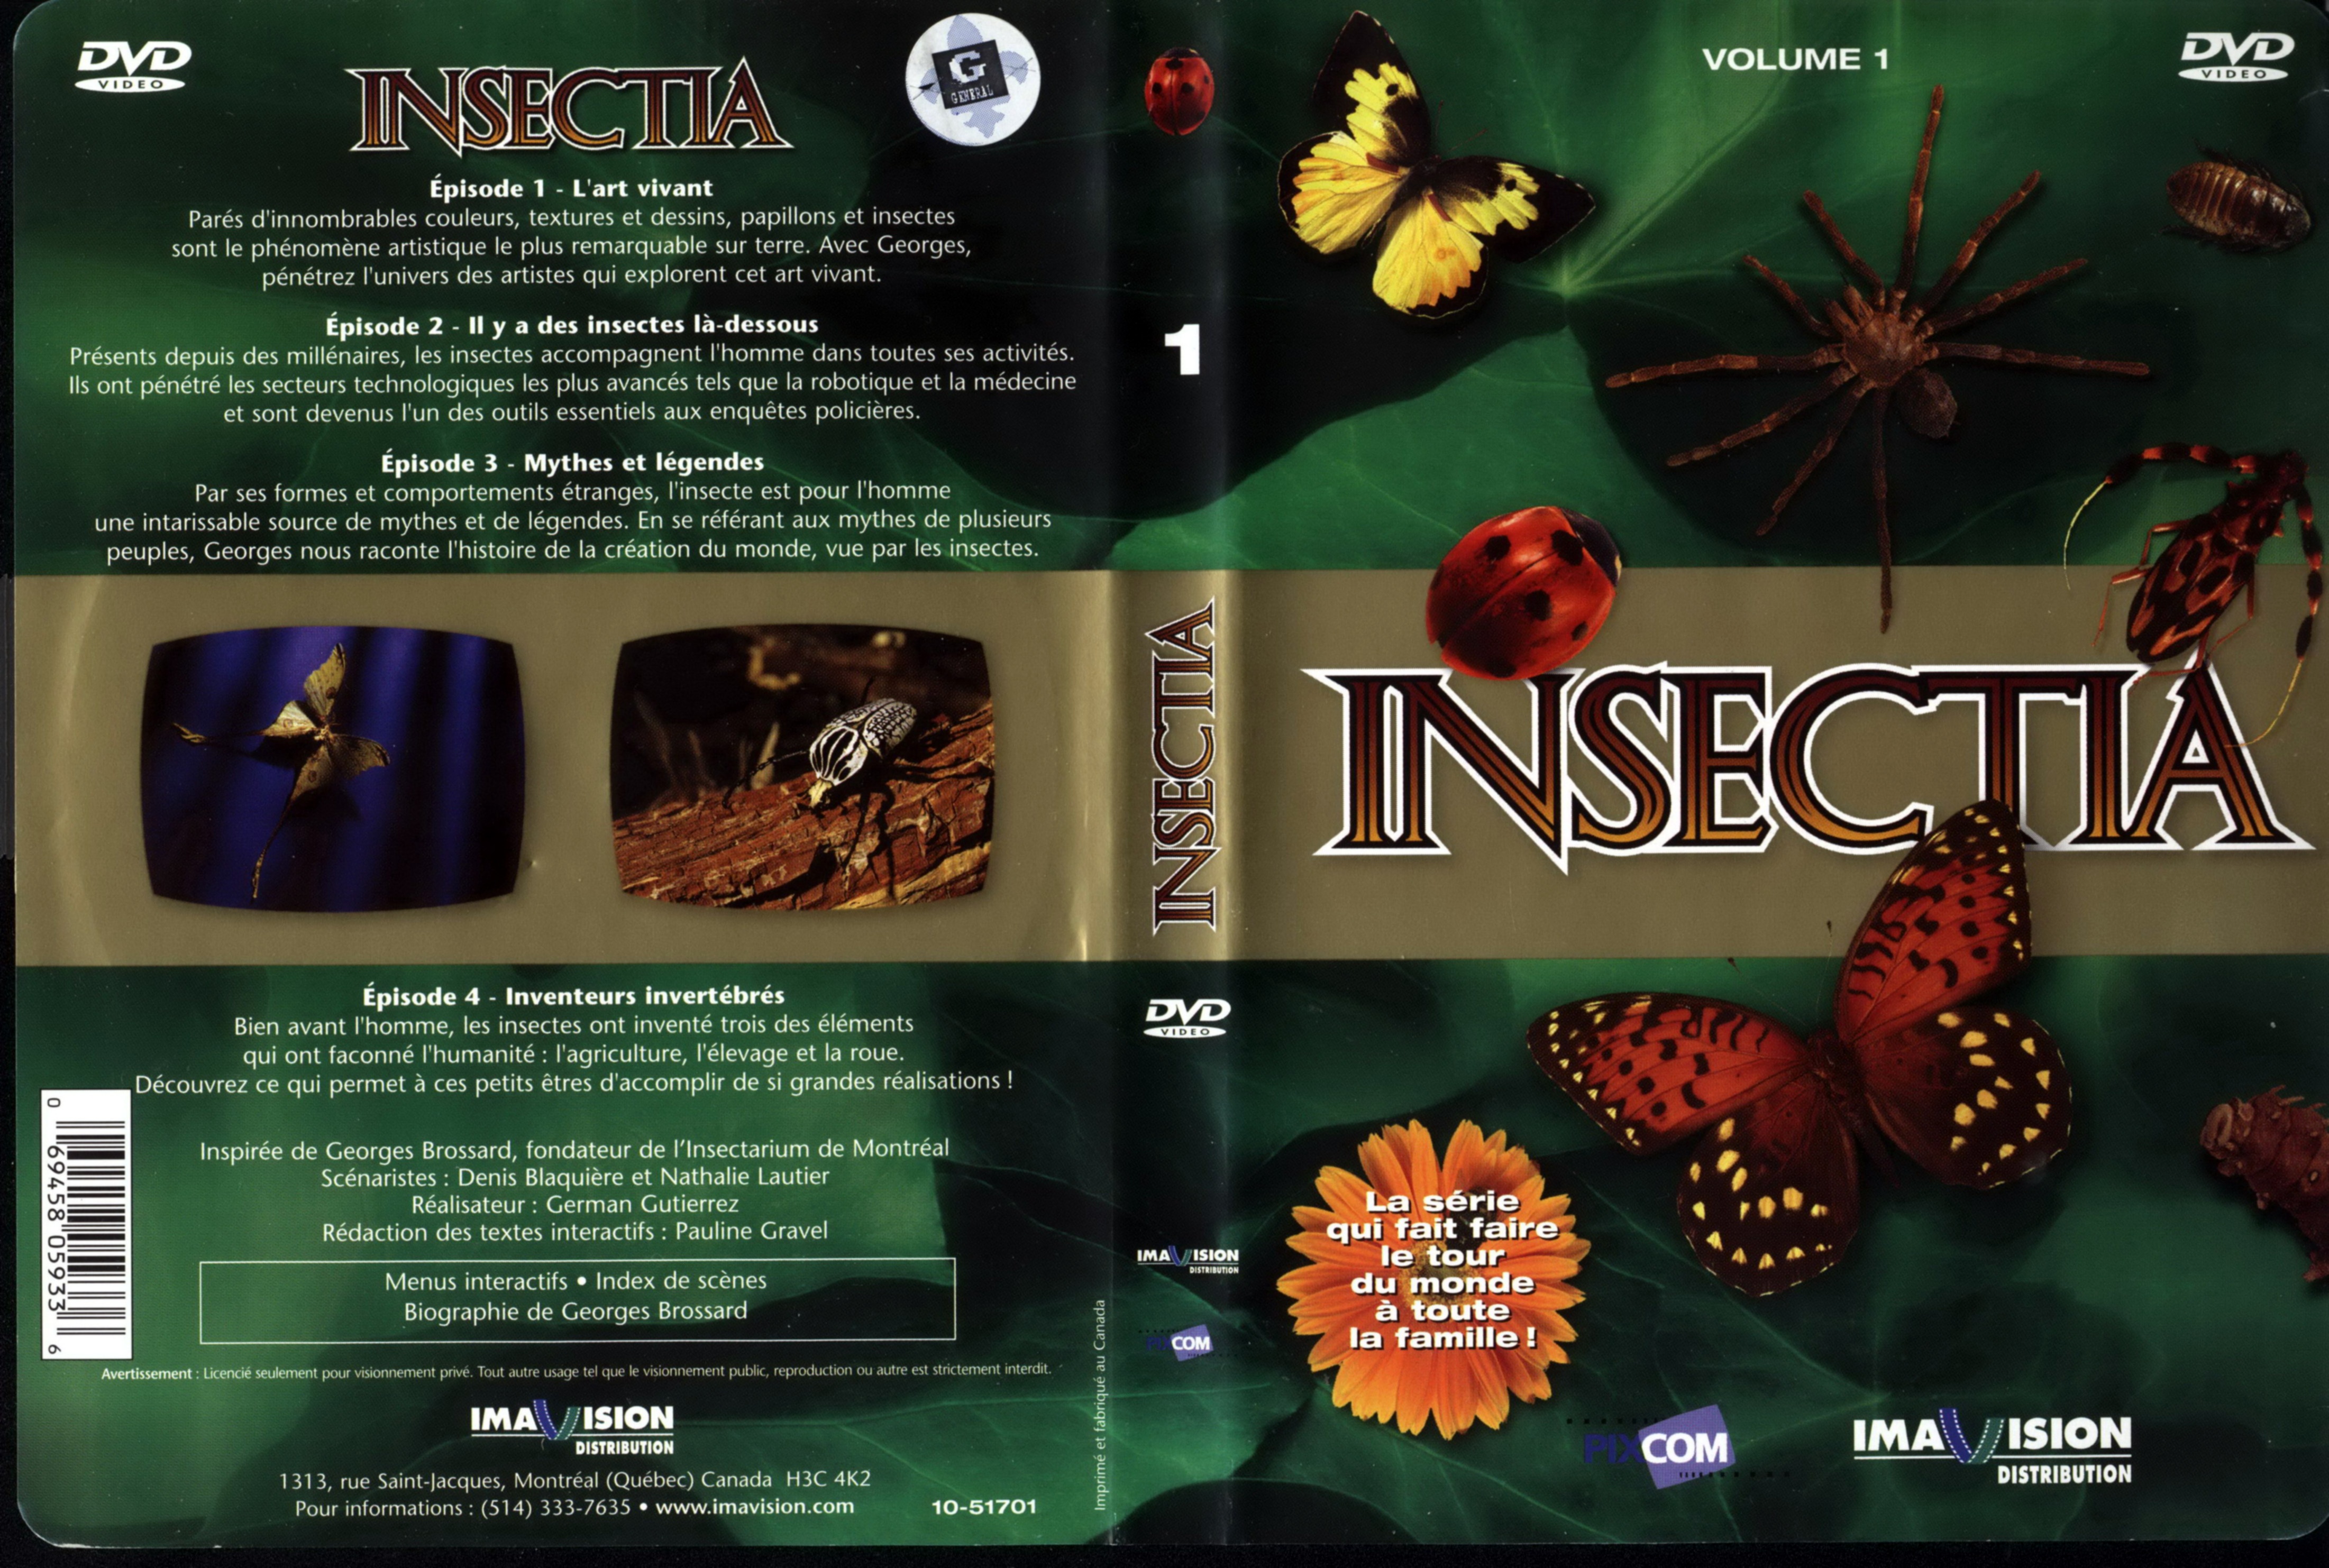 Jaquette DVD Insectia vol 1